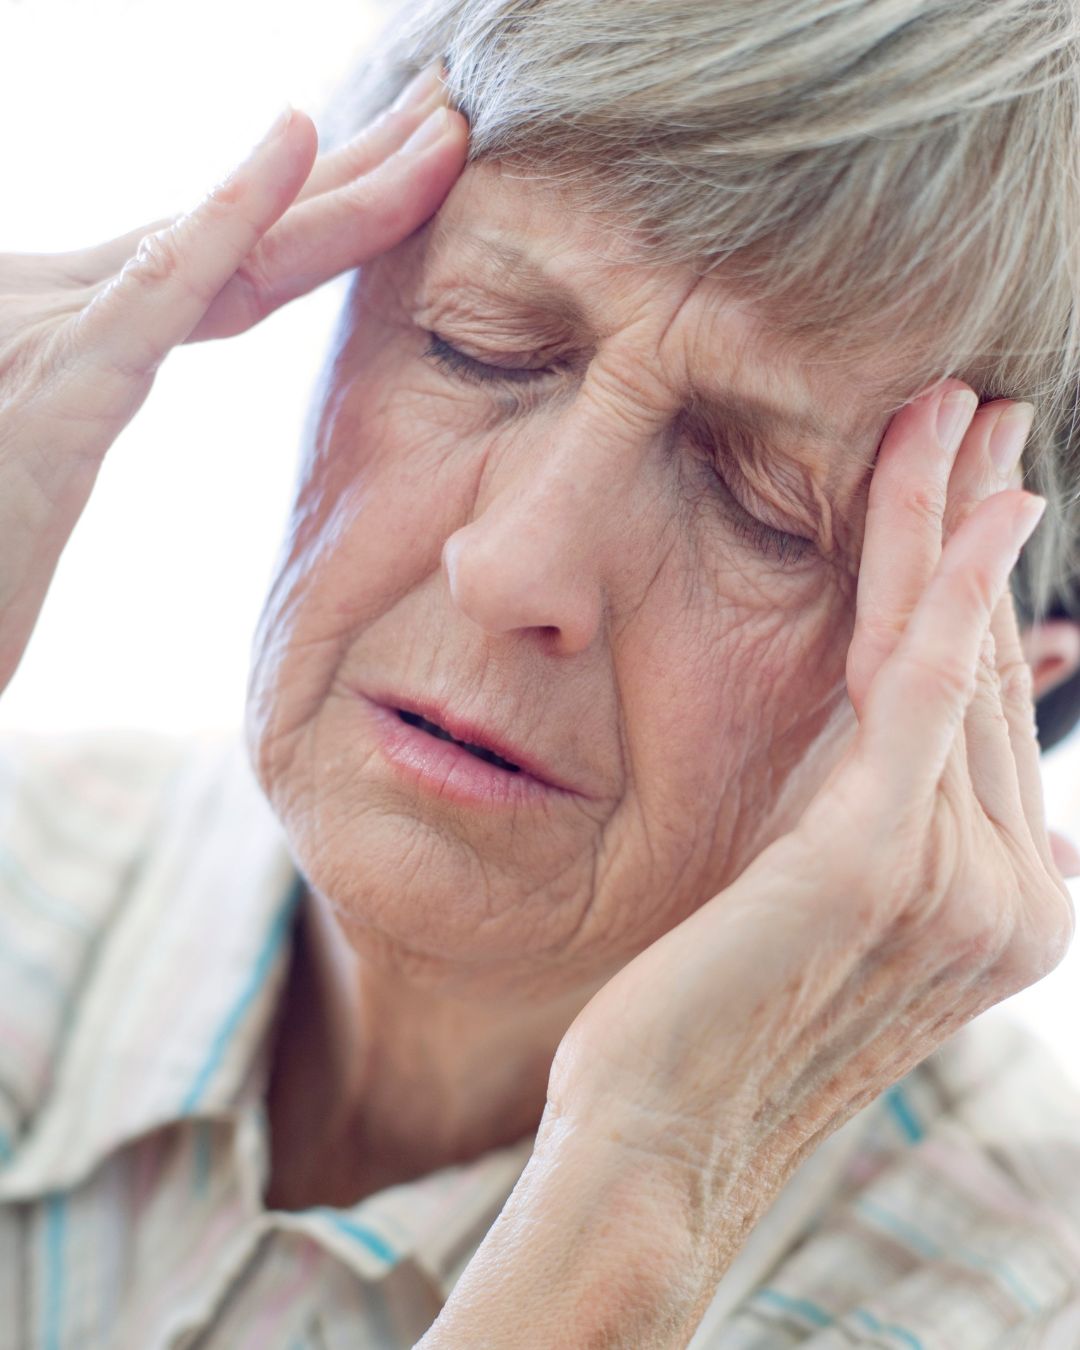 Migraine and Headache Relief